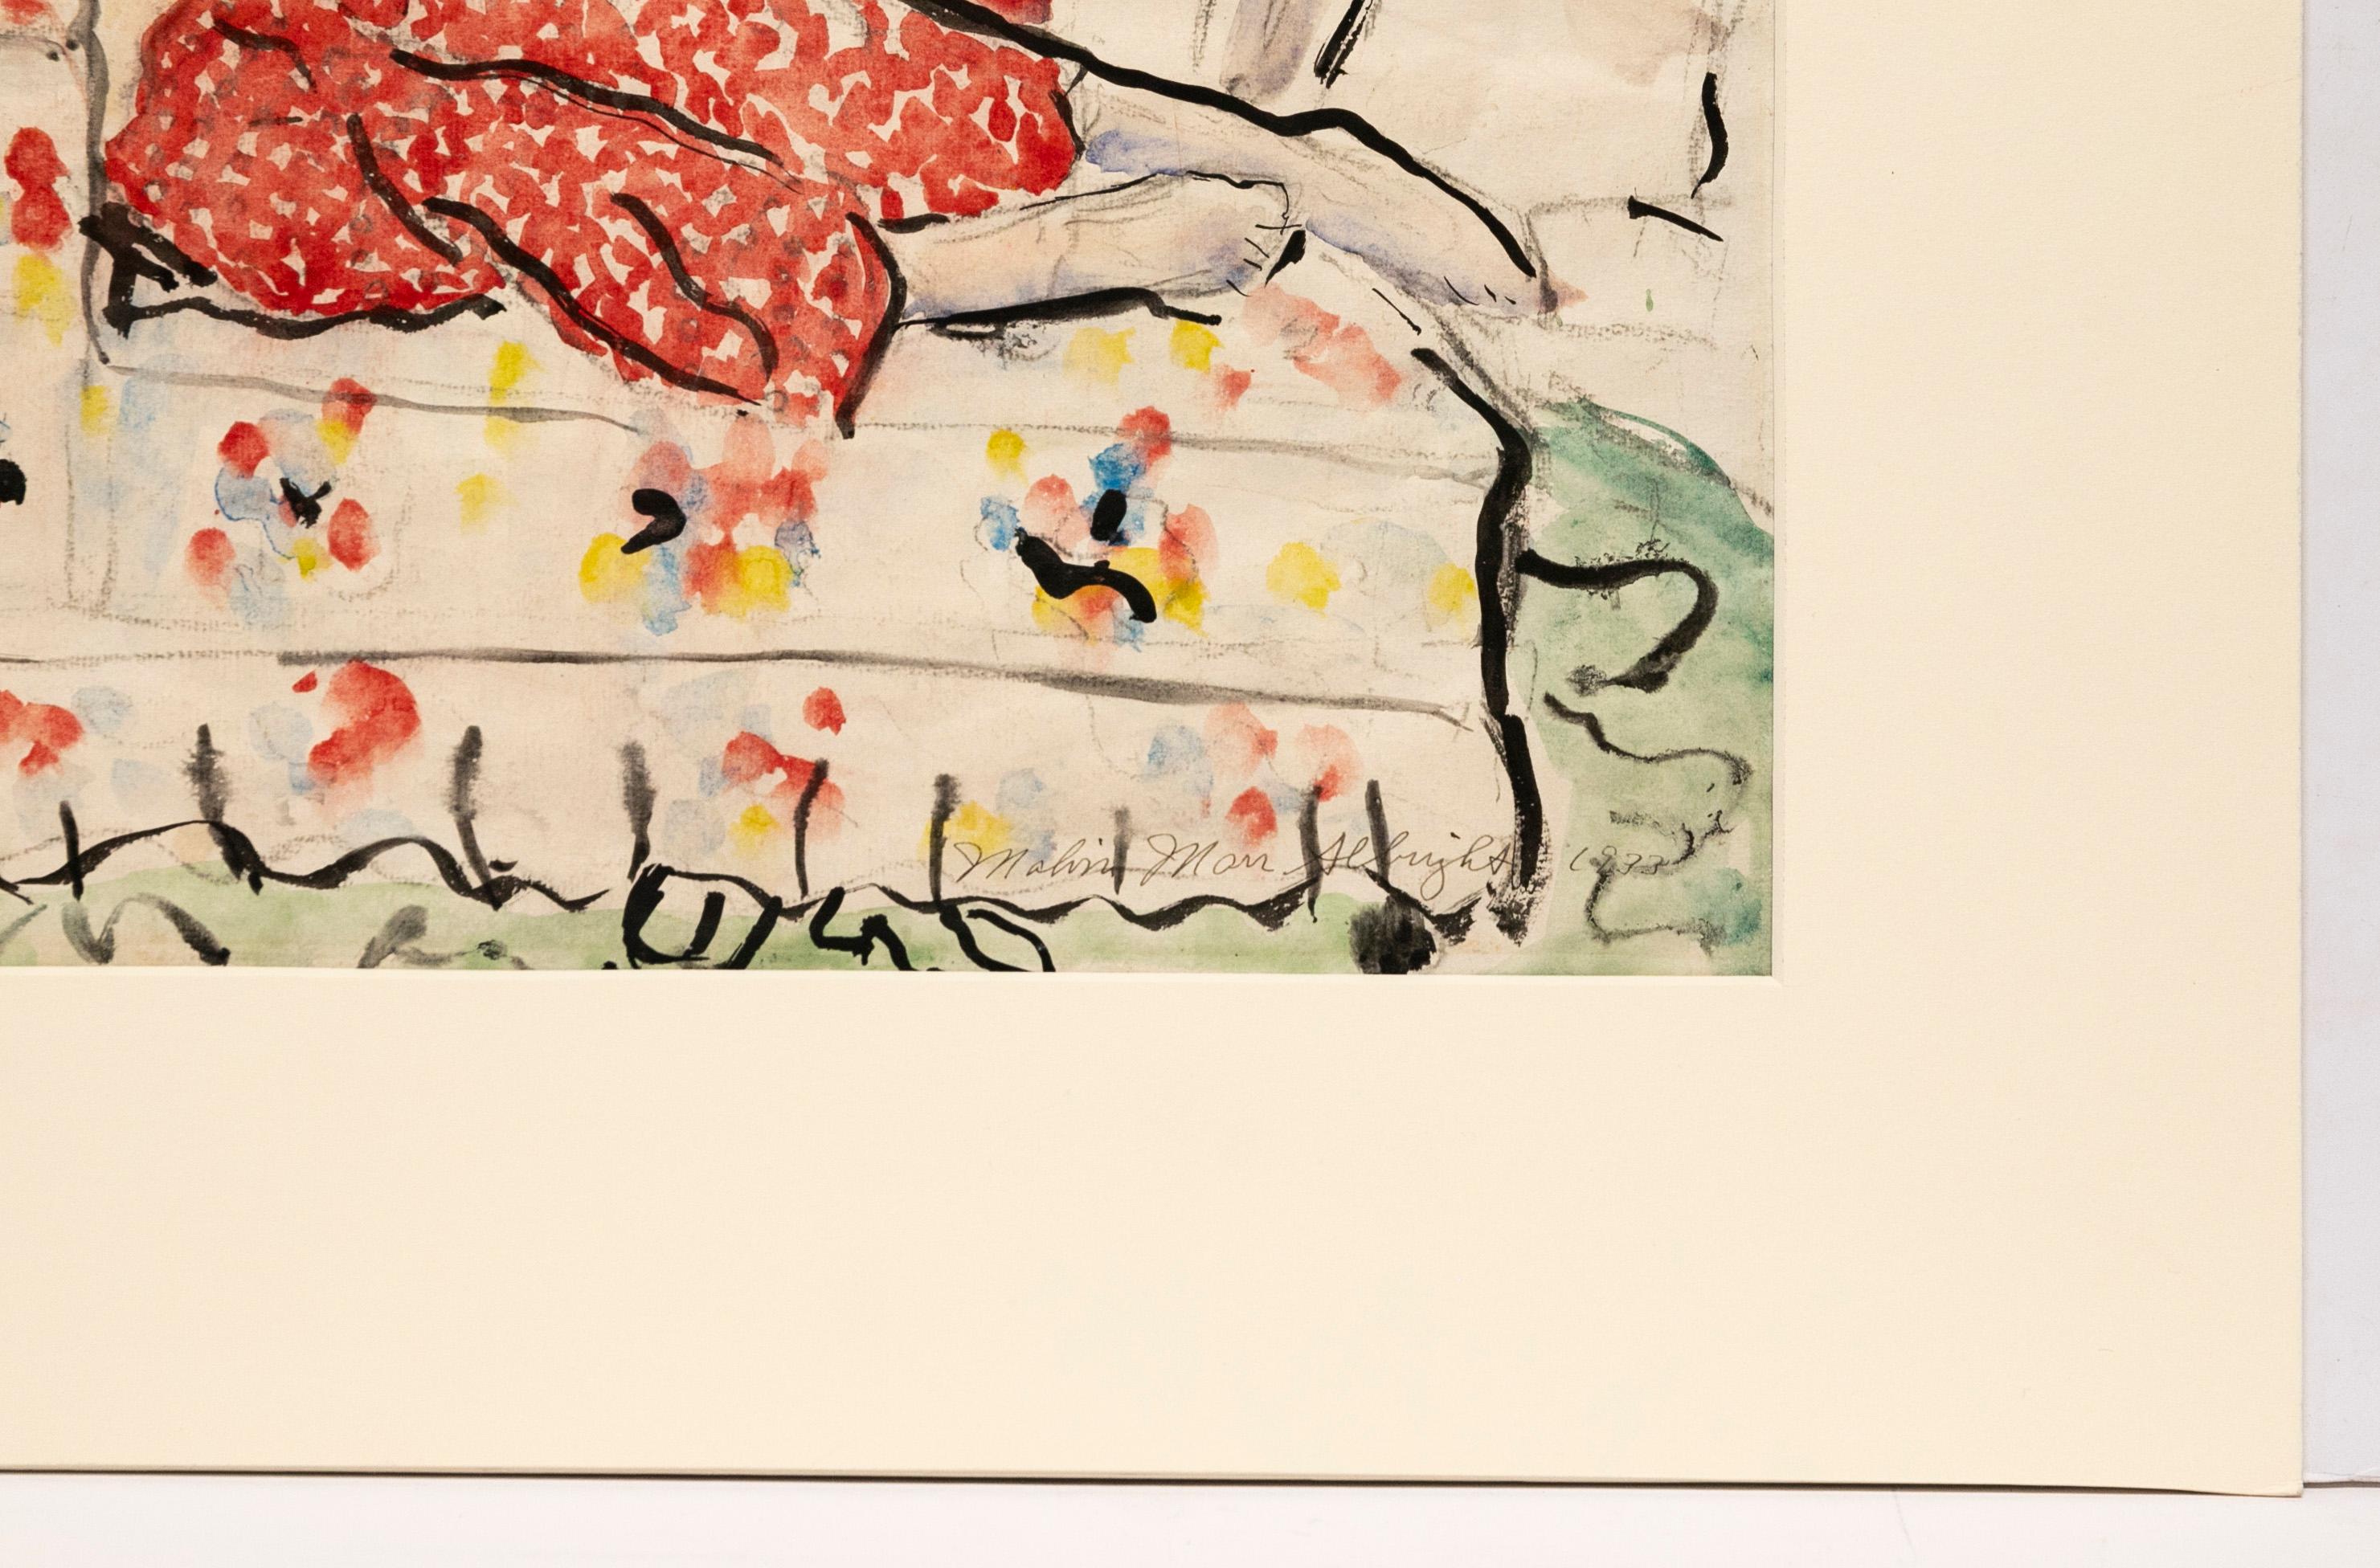 Ein 1933 entstandenes Aquarell einer liegenden Frau in einem roten Kleid von Malvin Marr Albright (Zsissily), dem eineiigen Zwilling des Künstlers Ivan Albright und Sohn des Künstlers Adam Le Lorrain Albright.

Albright wurde 1897 in Chicago